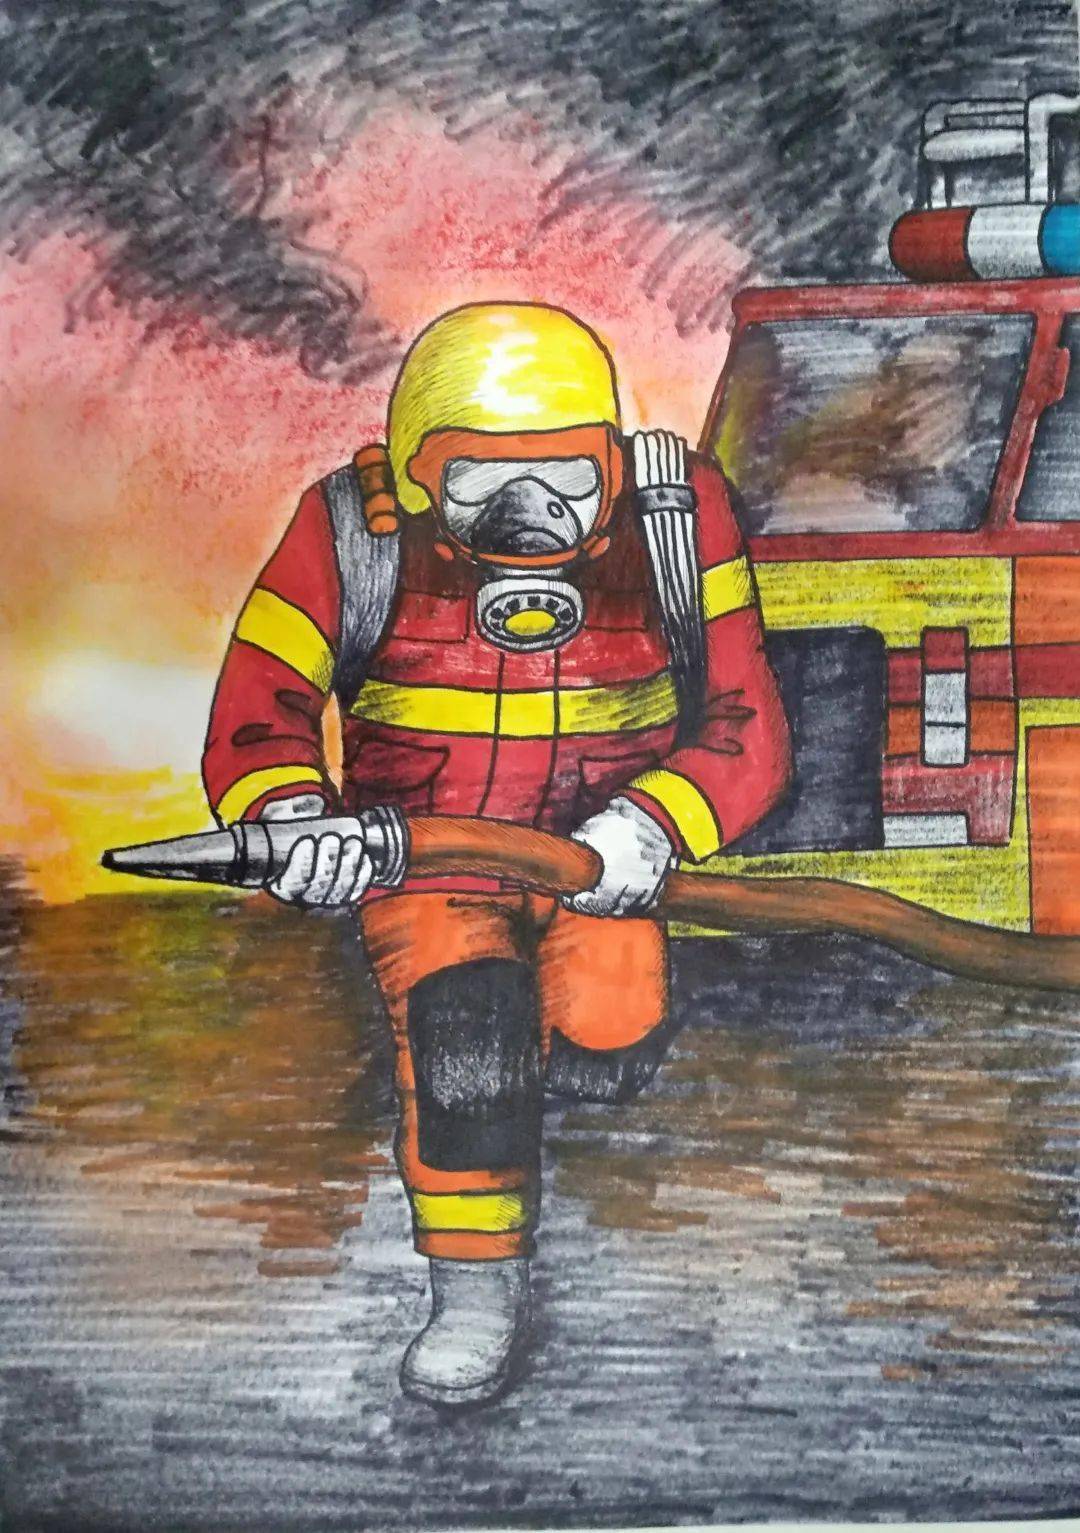 消防队员救火美术画图片